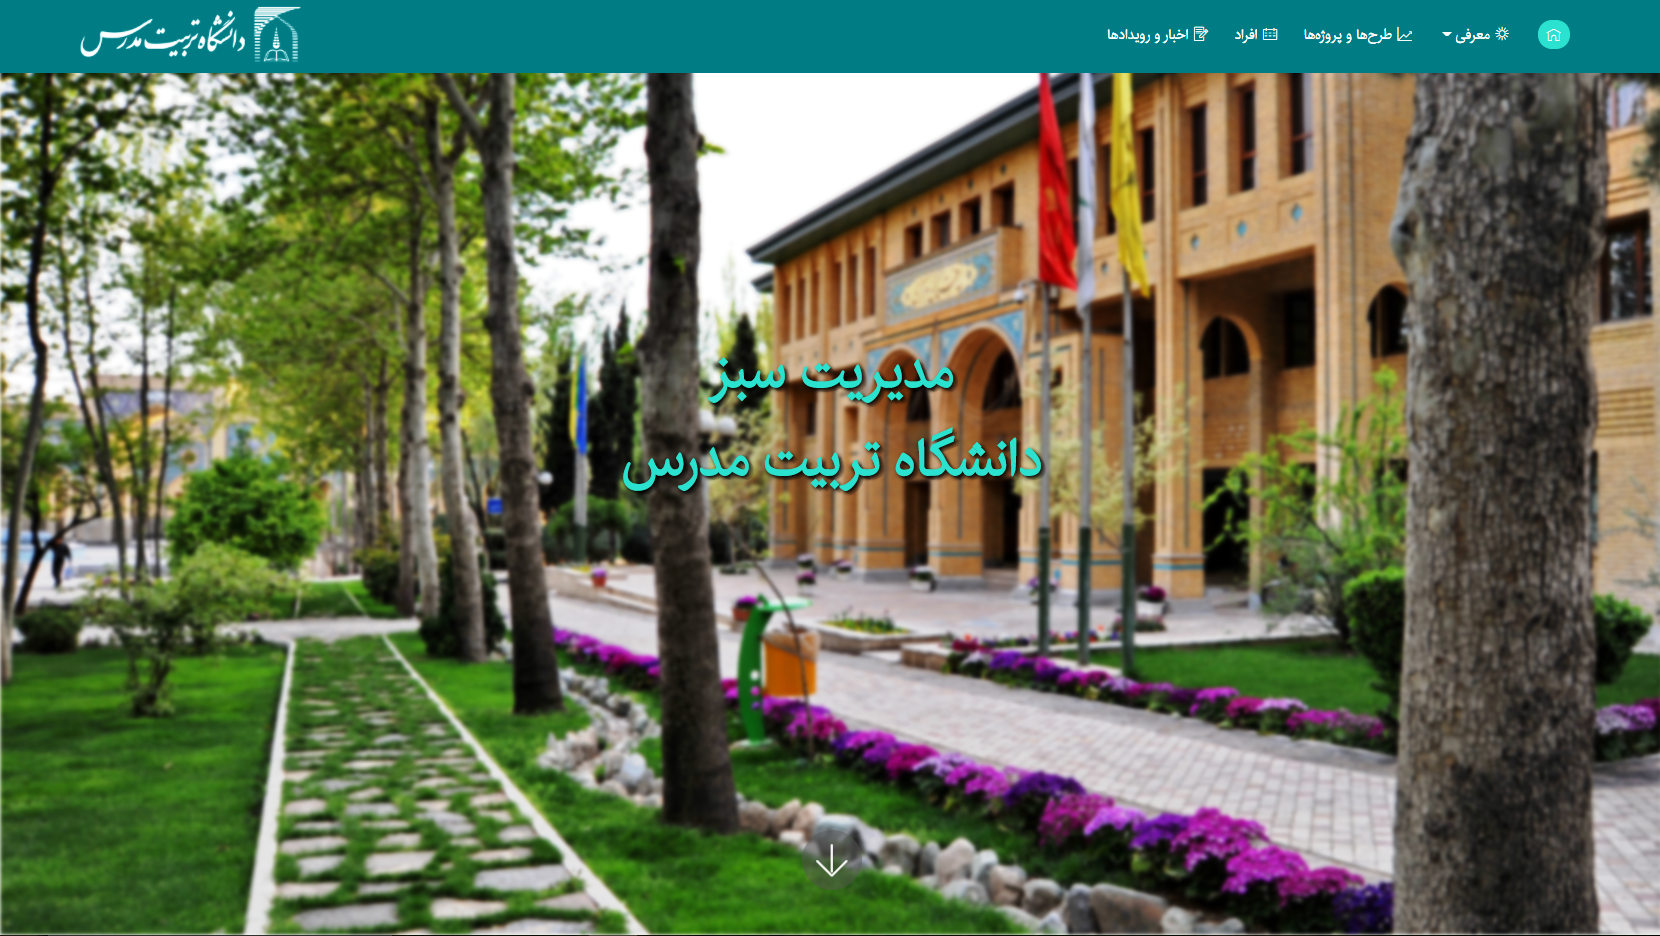 طراحی و راه اندازی وب سایت مدیریت سبز دانشگاه